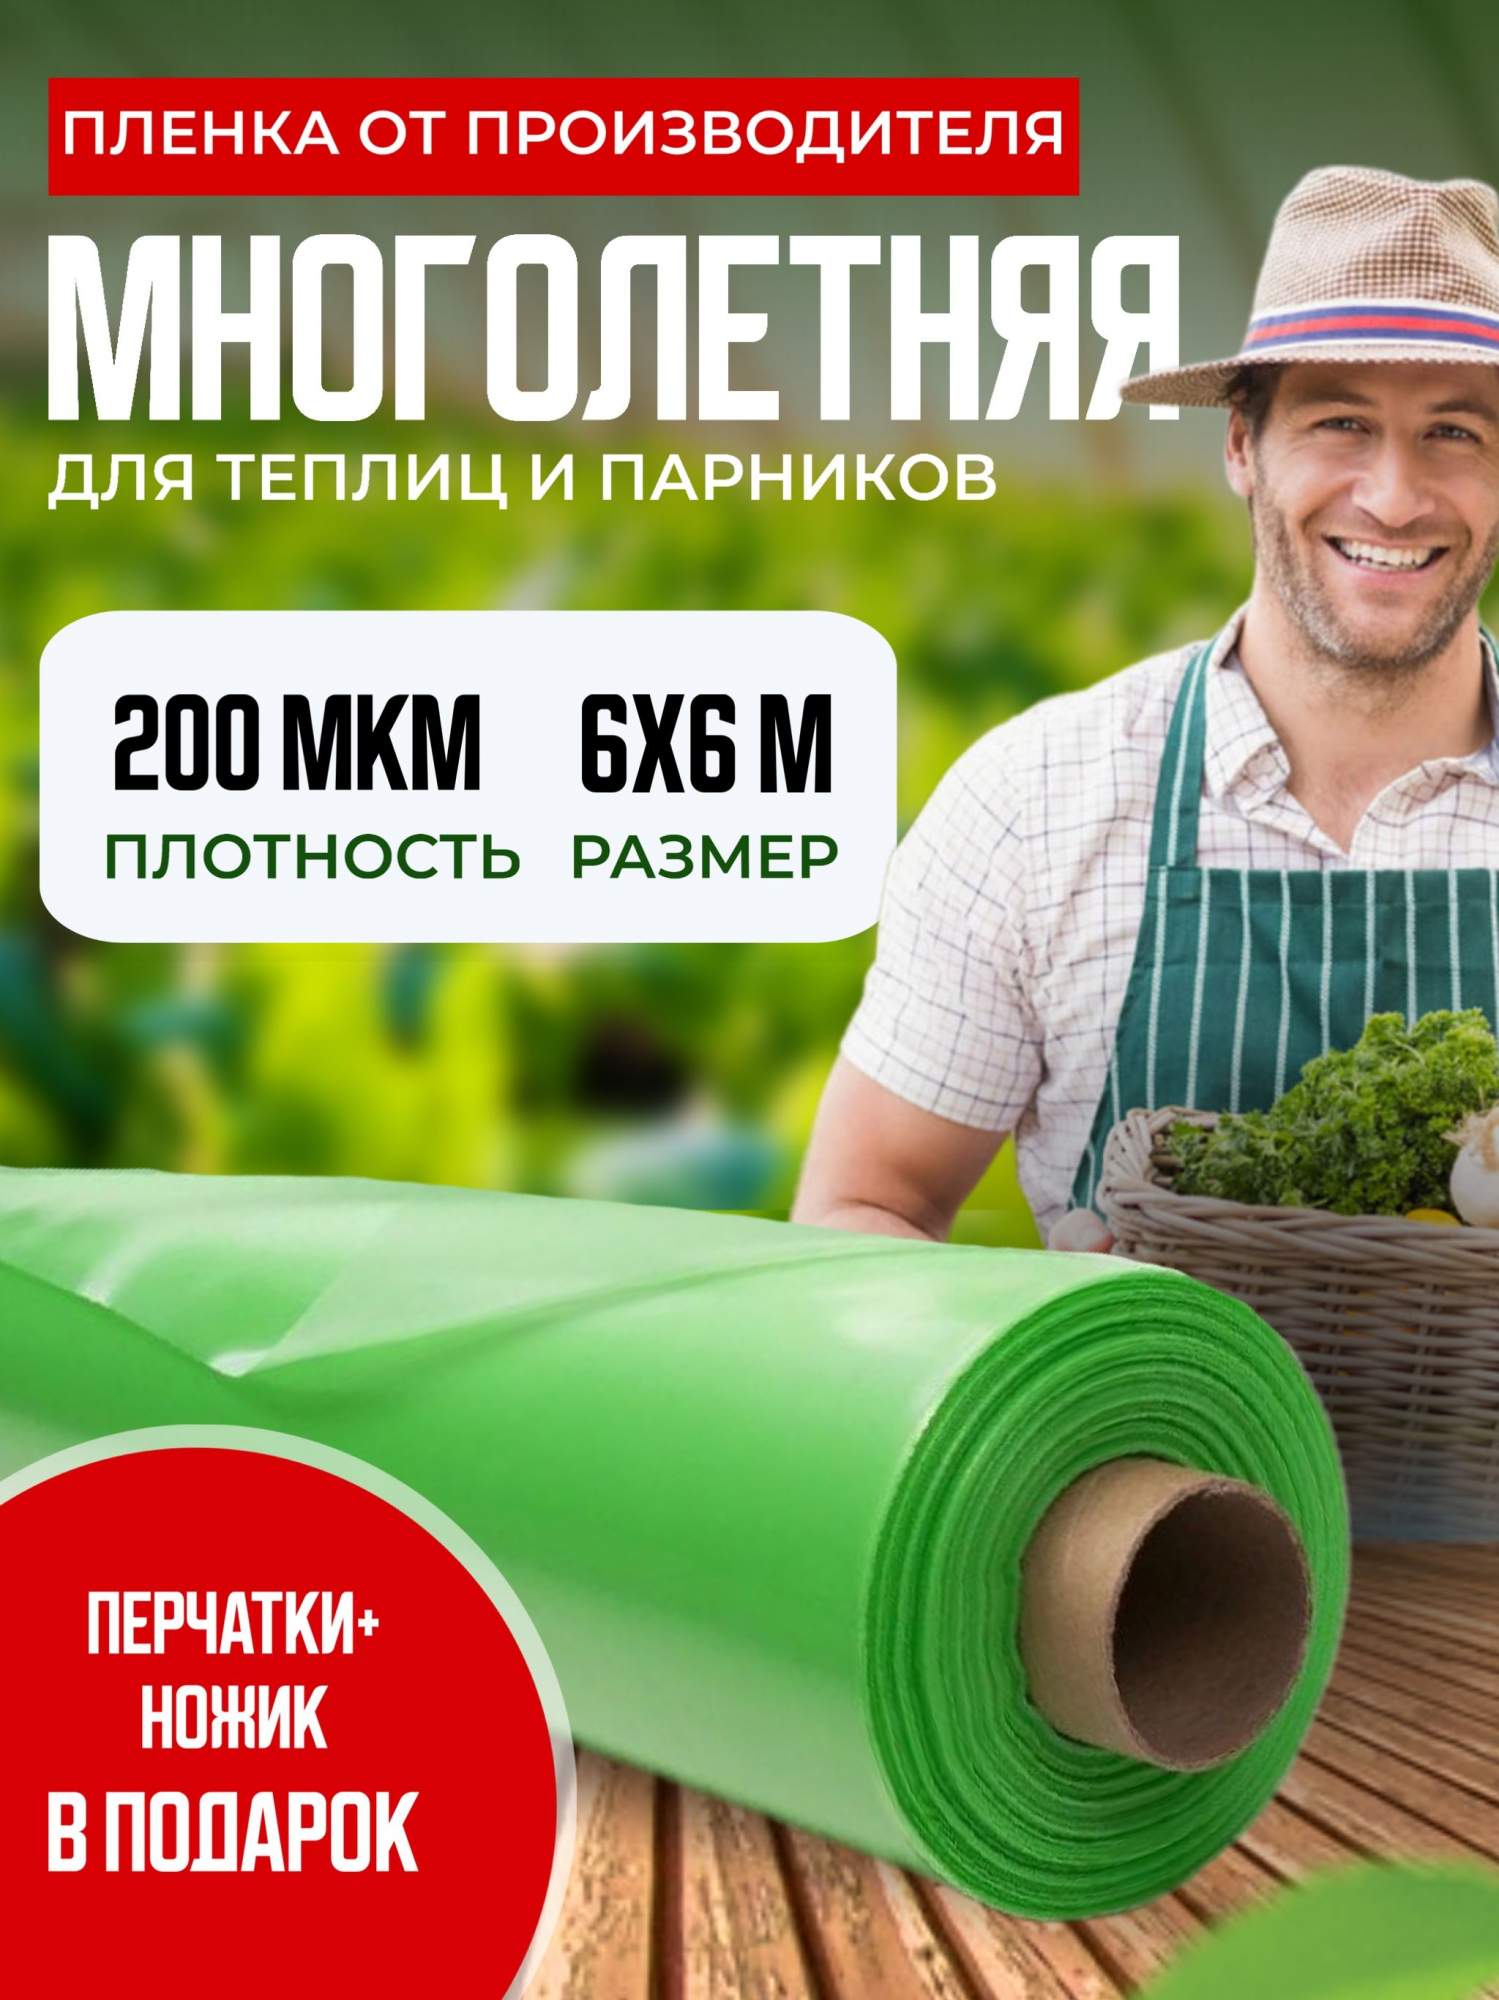 Пленка для теплиц многолетняя, 200 мкм, 6х6м, зеленый арт.149259390 - купить в Москве, цены на Мегамаркет | 600013059957